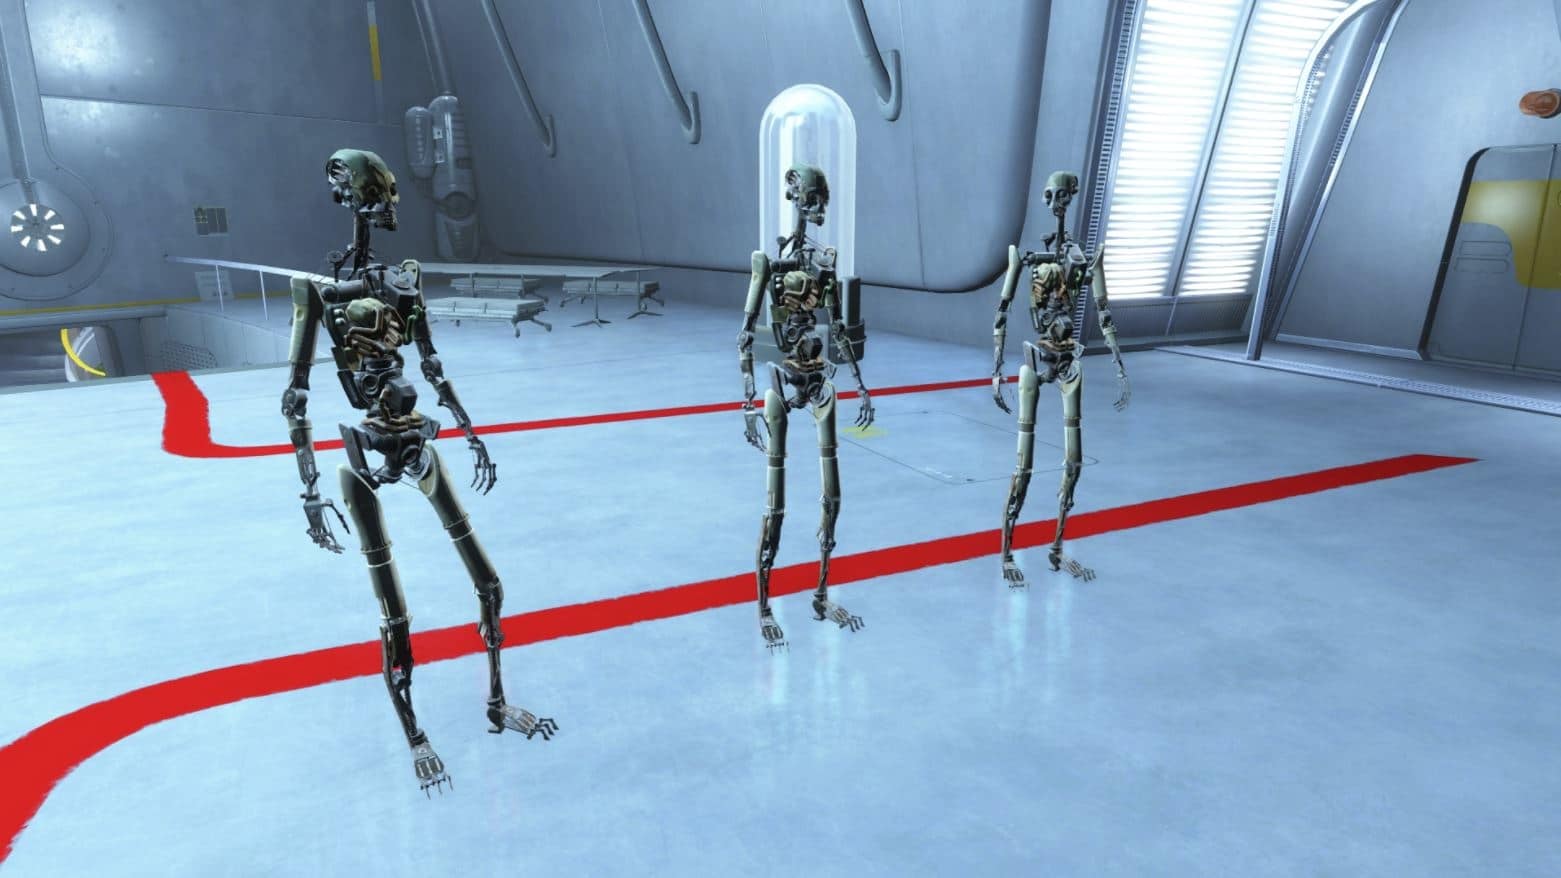 Едно от най-великите творения на Института: хуманоидните роботи от Fallout 4, известни също като Синтове.